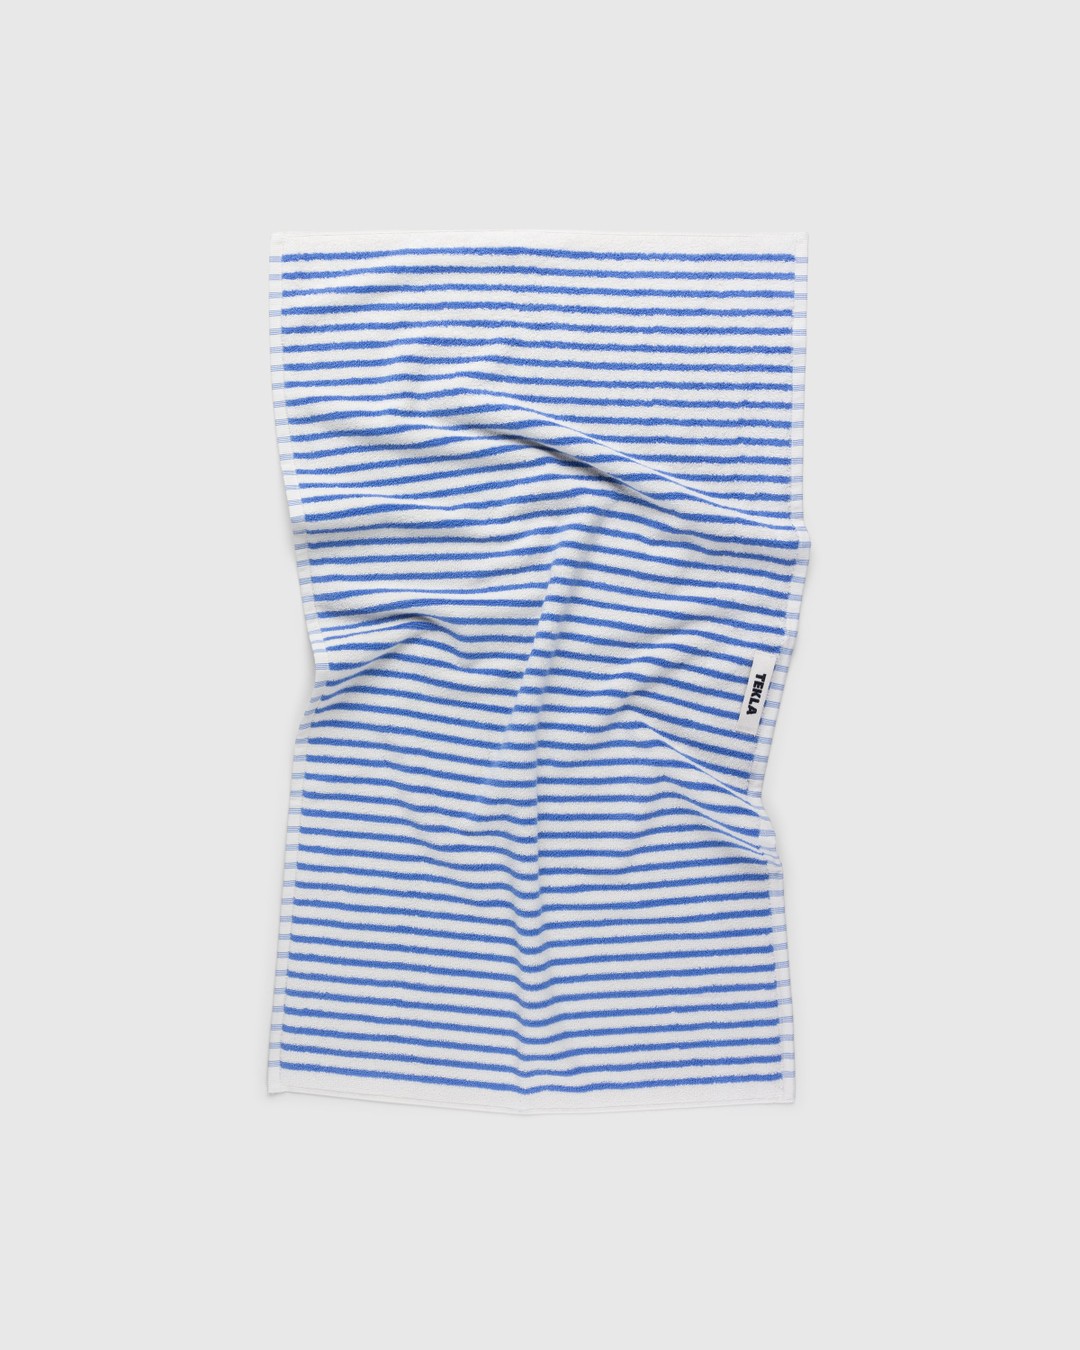 Tekla – Hand Towel Coastal Stripes - Towels - Multi - Image 1